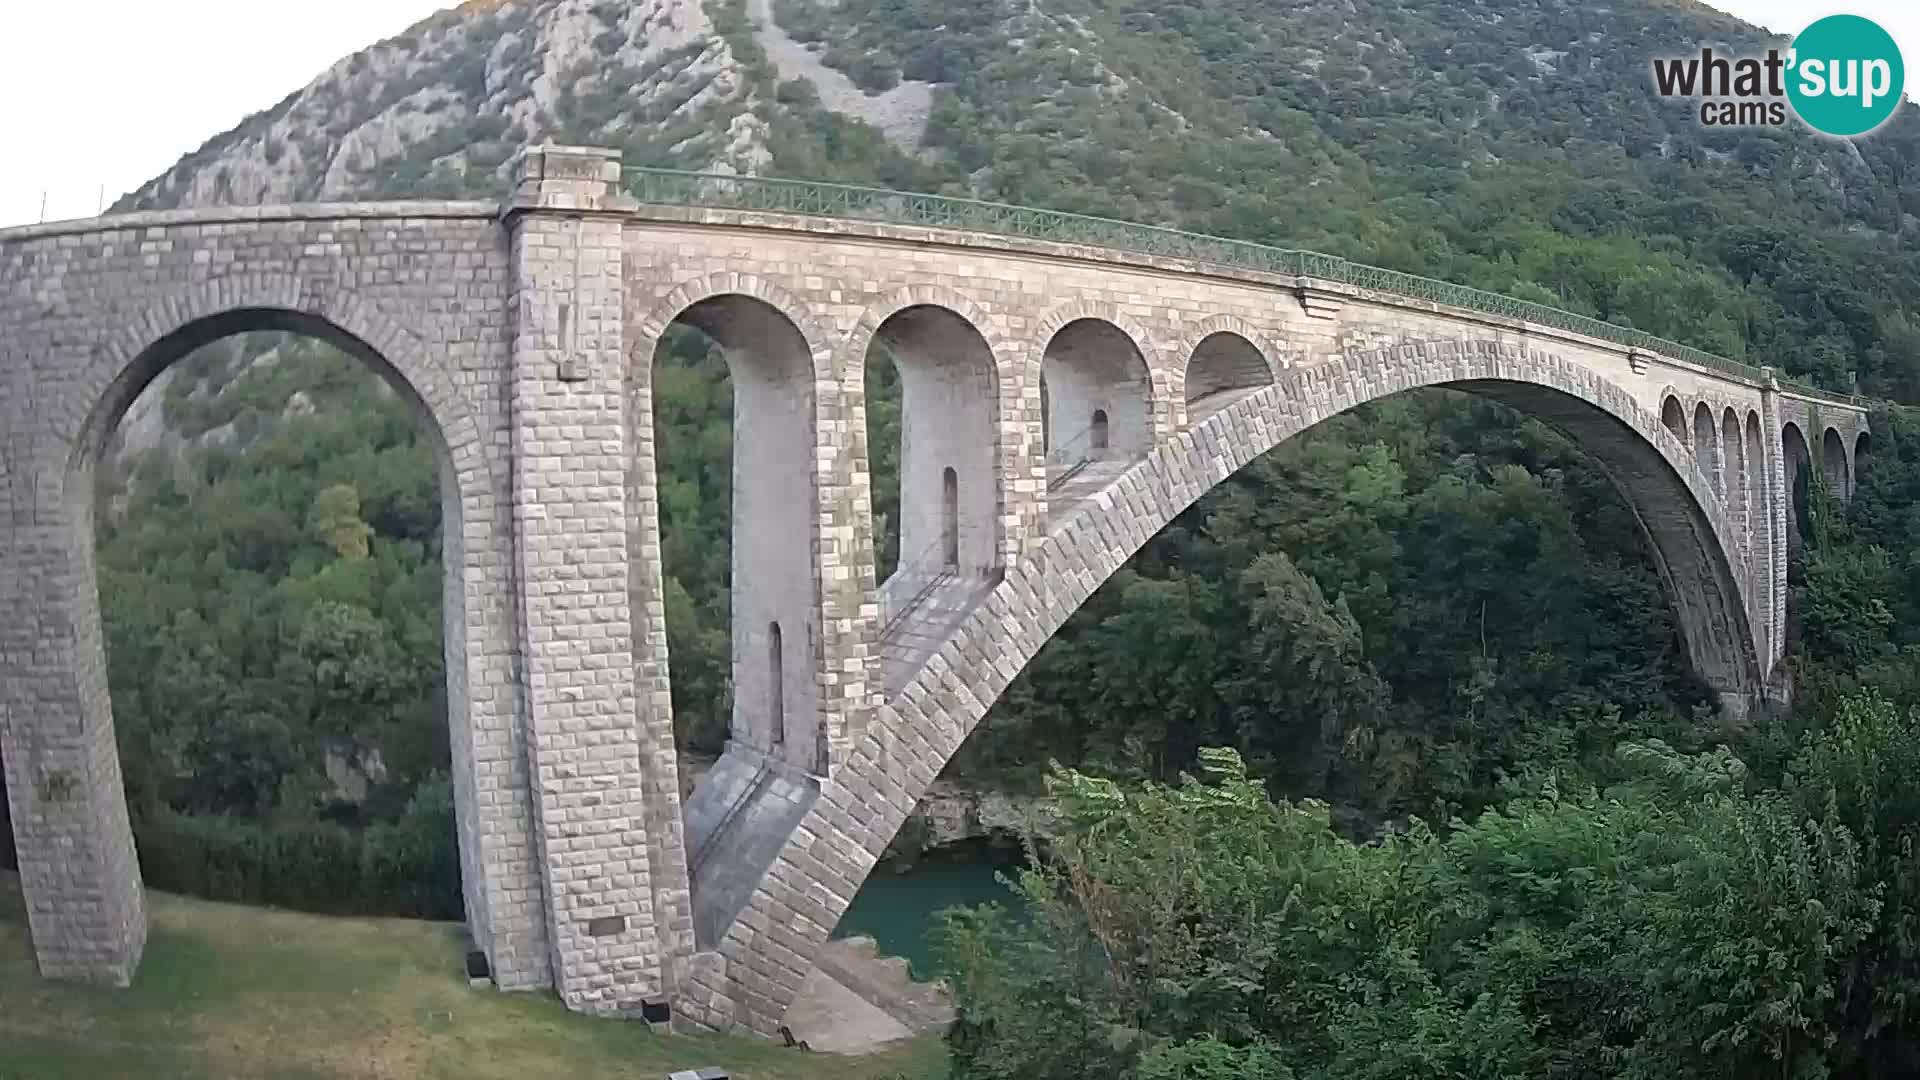 Puente de Solkan – Camera en vivo